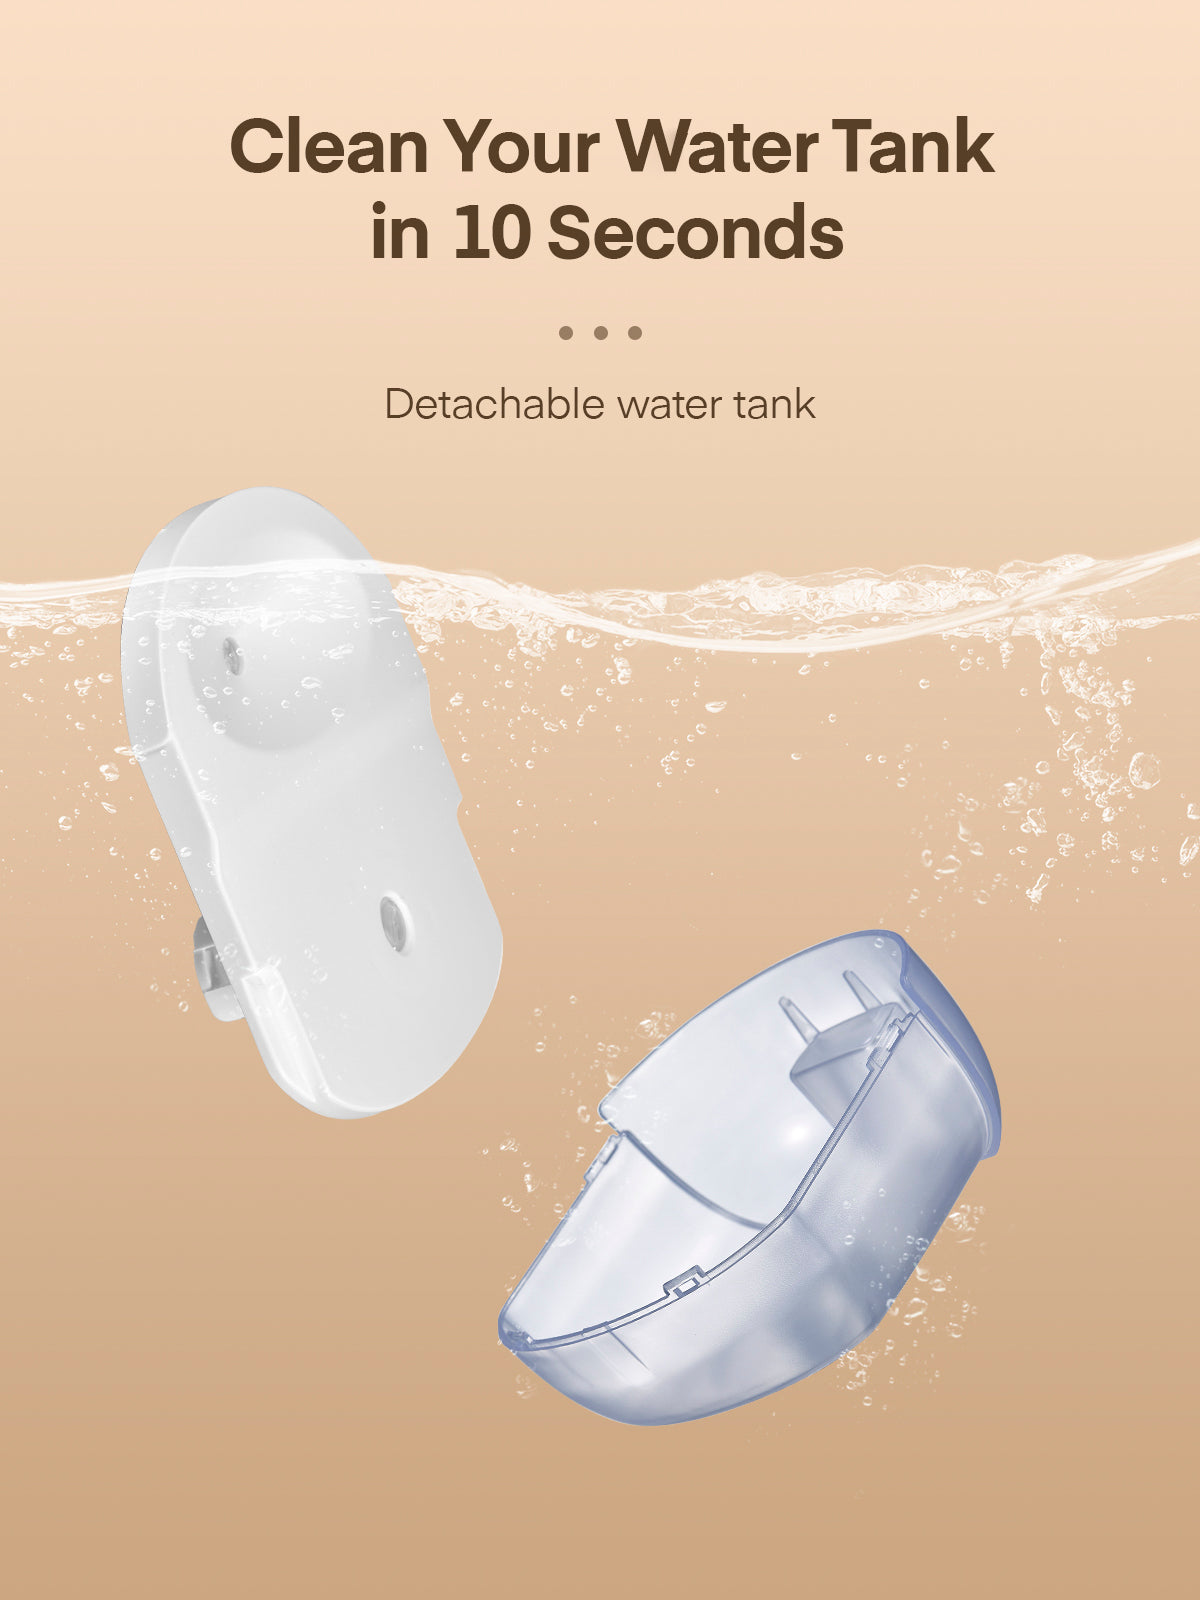 iTvanila Small Dehumidifier, Quiet Mini Dehumidifier 220 Sq.Ft (20oz Water Tank), Portable Dehumidifier for Bedroom, Bathroom, Closet and RV, Auto Off, Auto Defrost